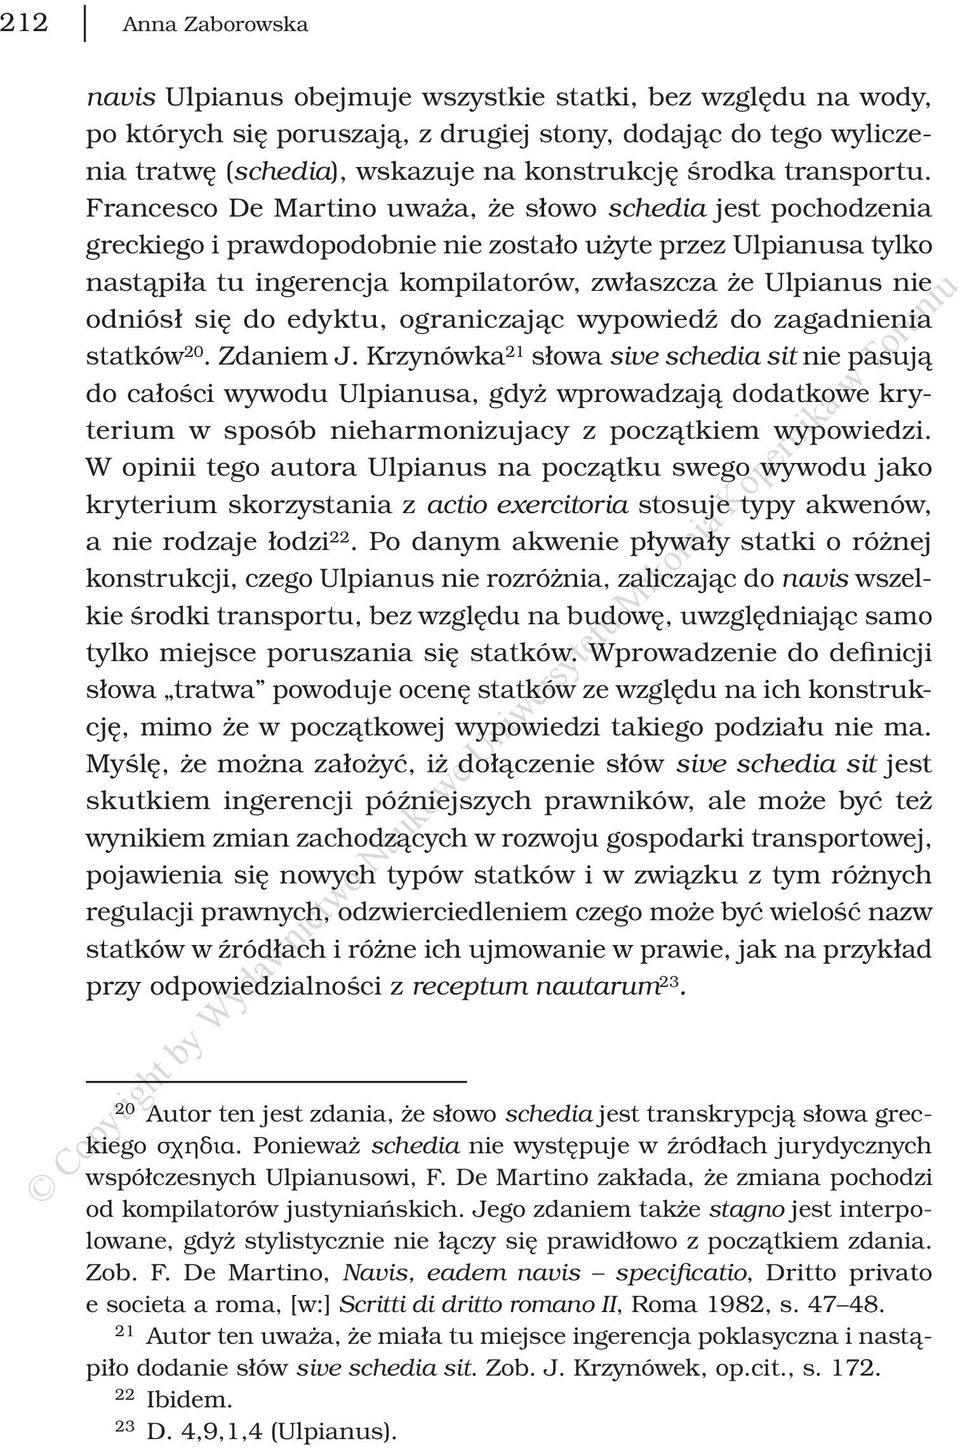 Francesco De Martino uważa, że słowo schedia jest pochodzenia greckiego i prawdopodobnie nie zostało użyte przez Ulpianusa tylko nastąpiła tu ingerencja kompilatorów, zwłaszcza że Ulpianus nie